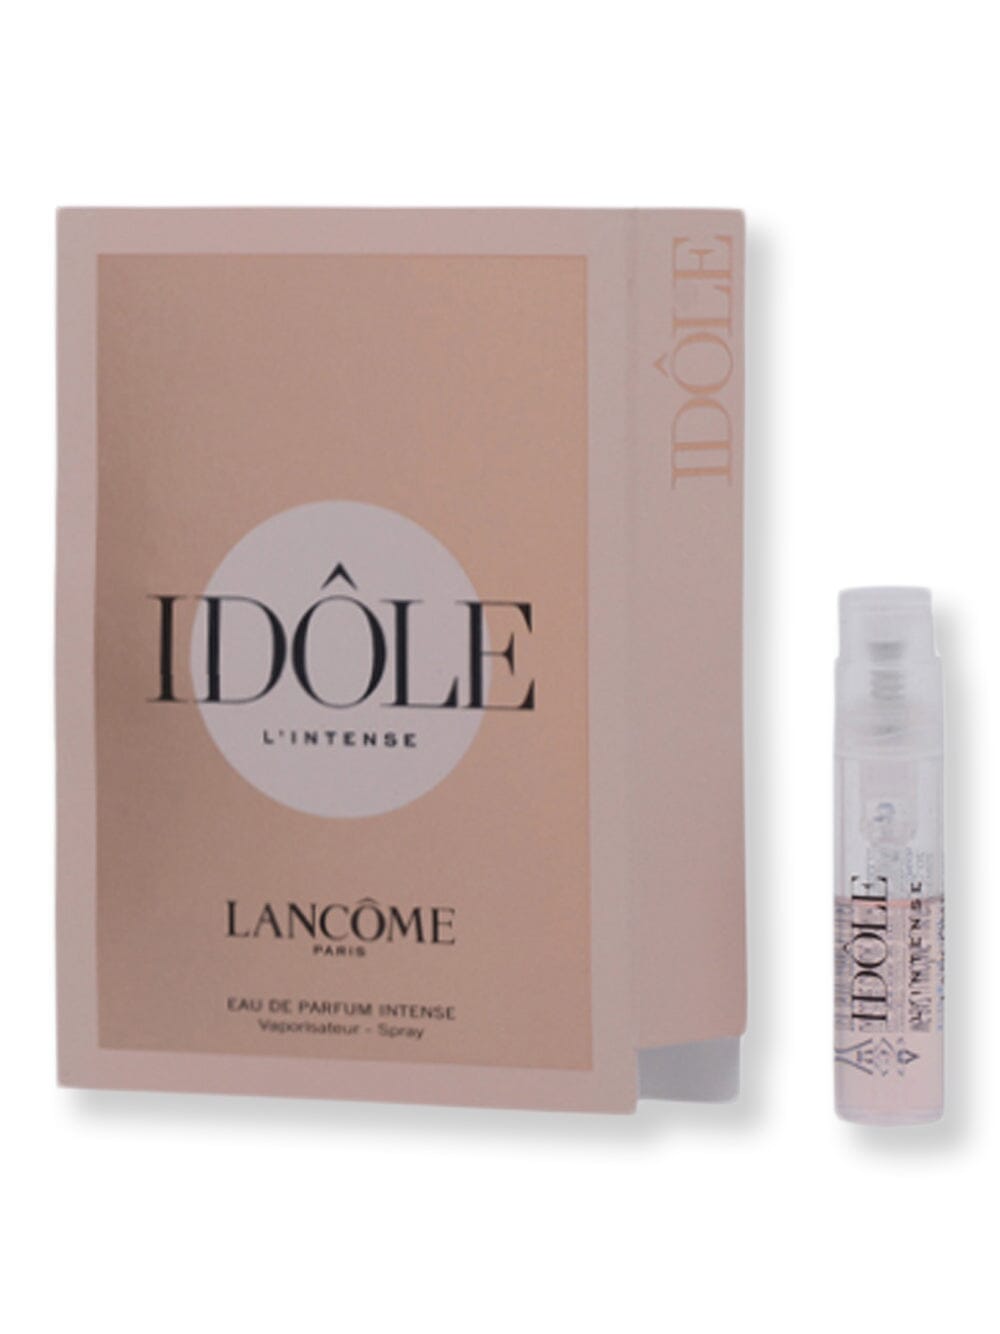 Lancome Lancome Idole L'intense EDP Spray Intense 0.04 oz1.2 ml Perfume 